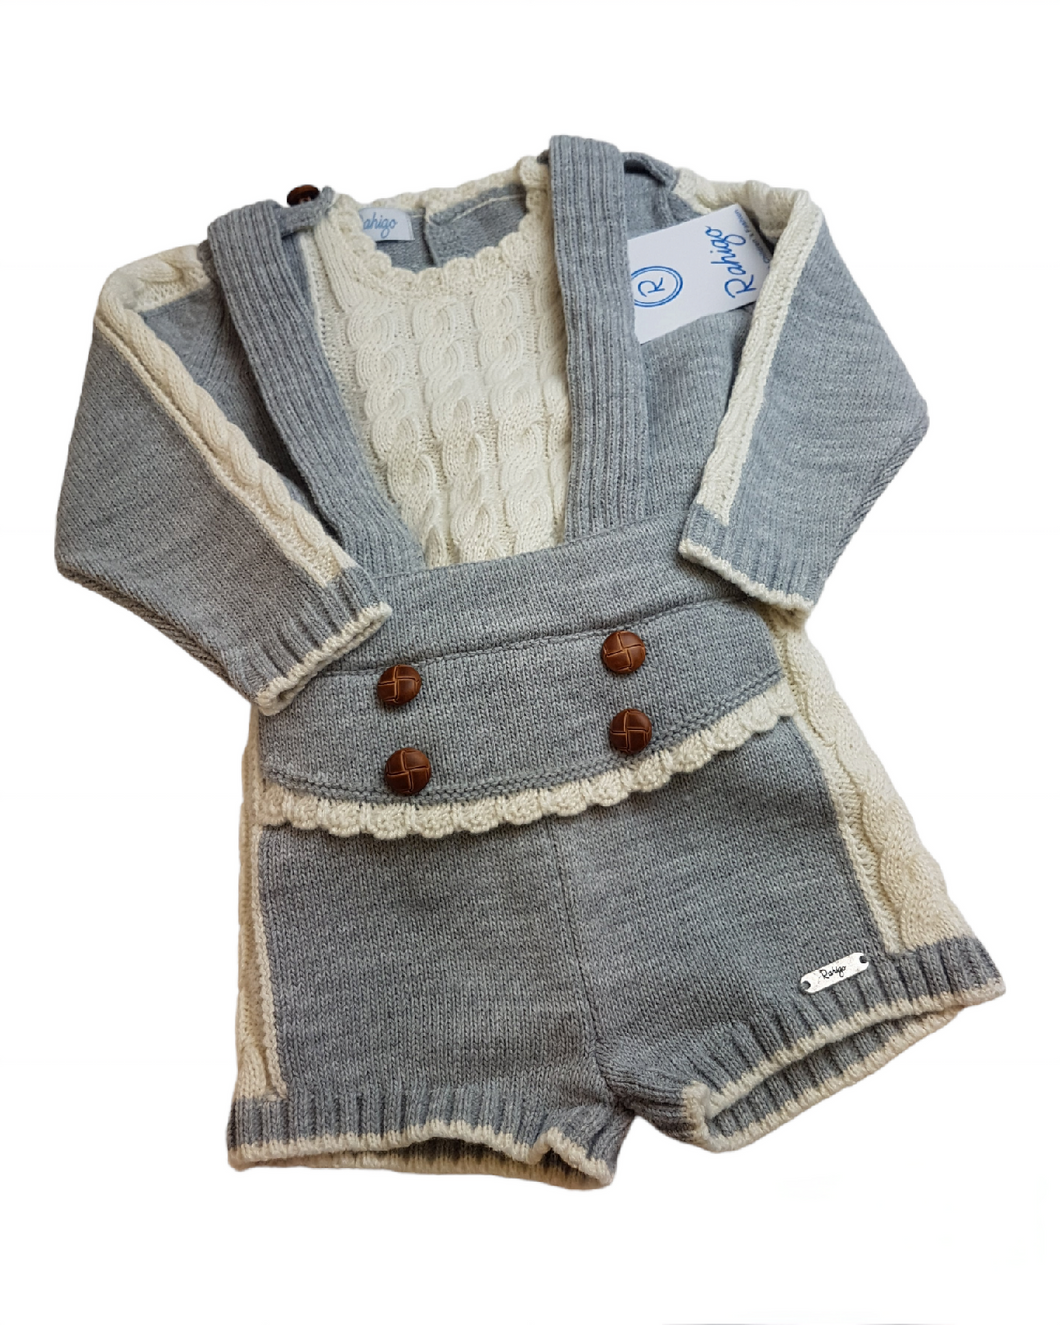 Rahigo knitted set - grey